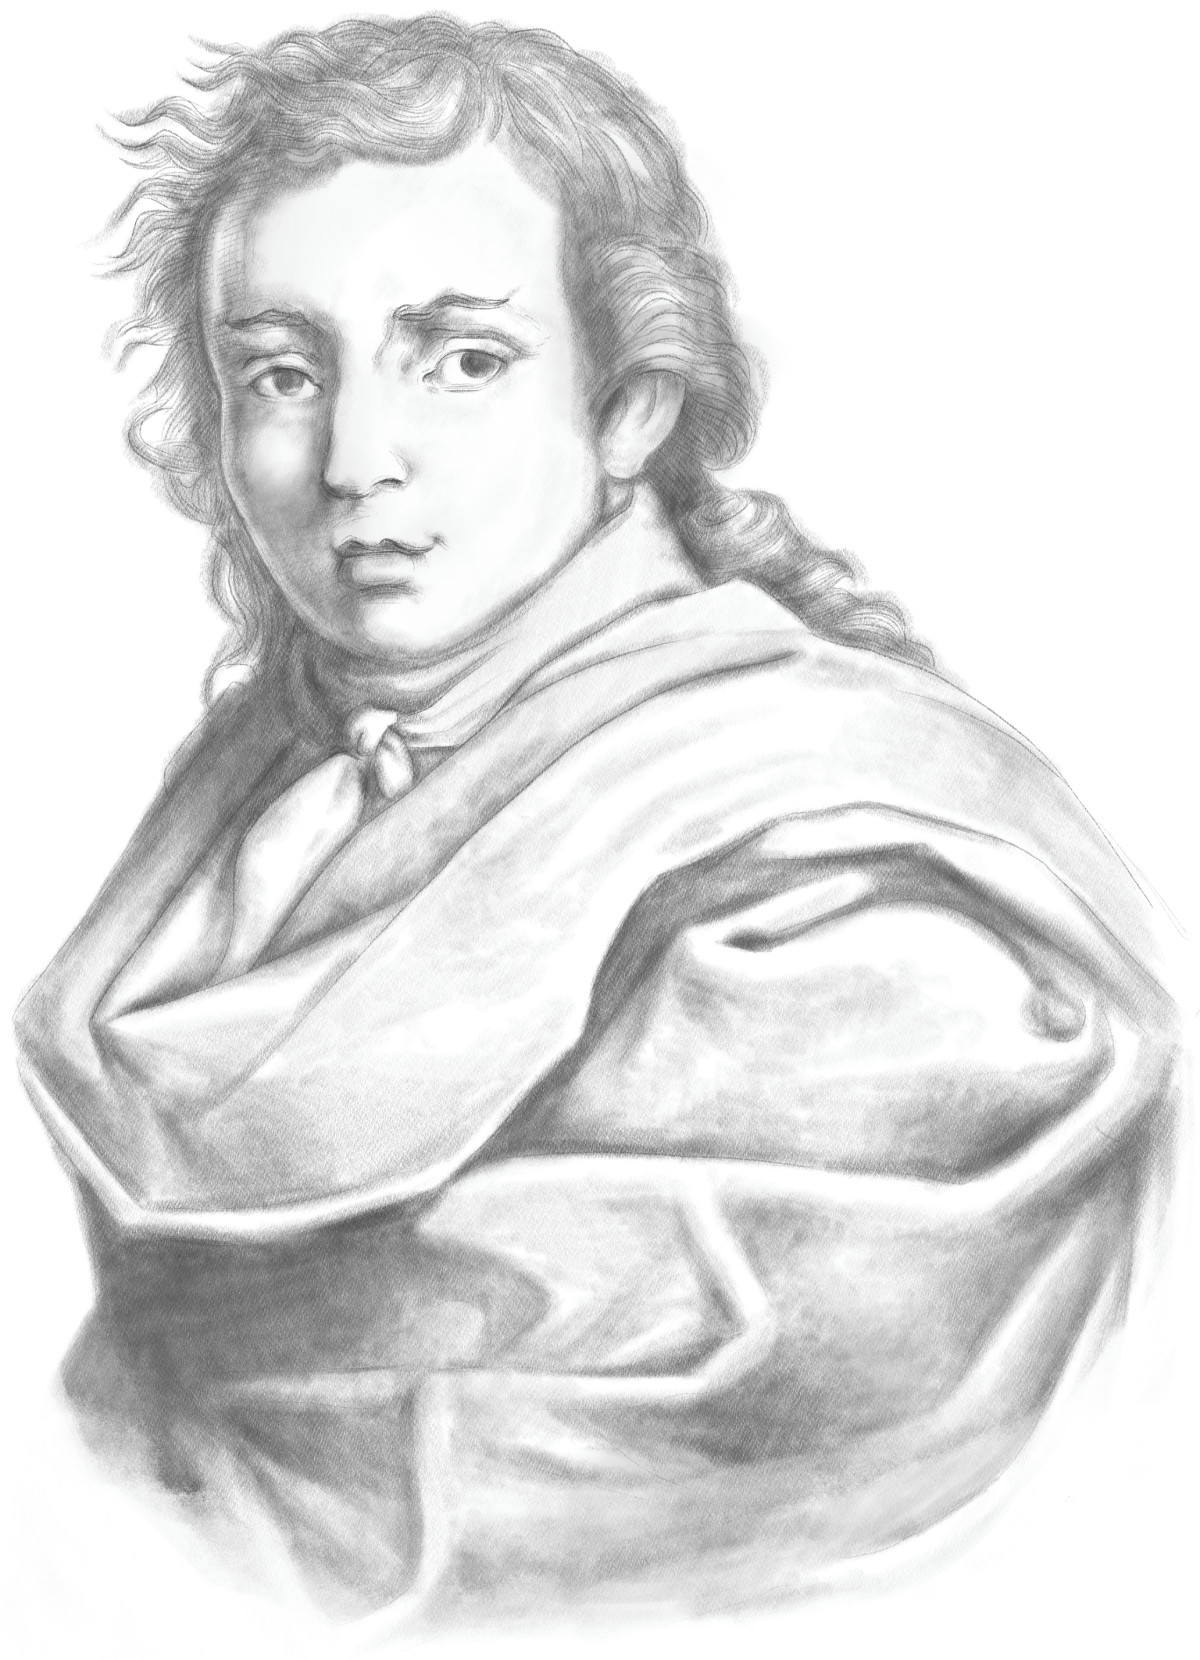 Gian Giacomo Cavallo